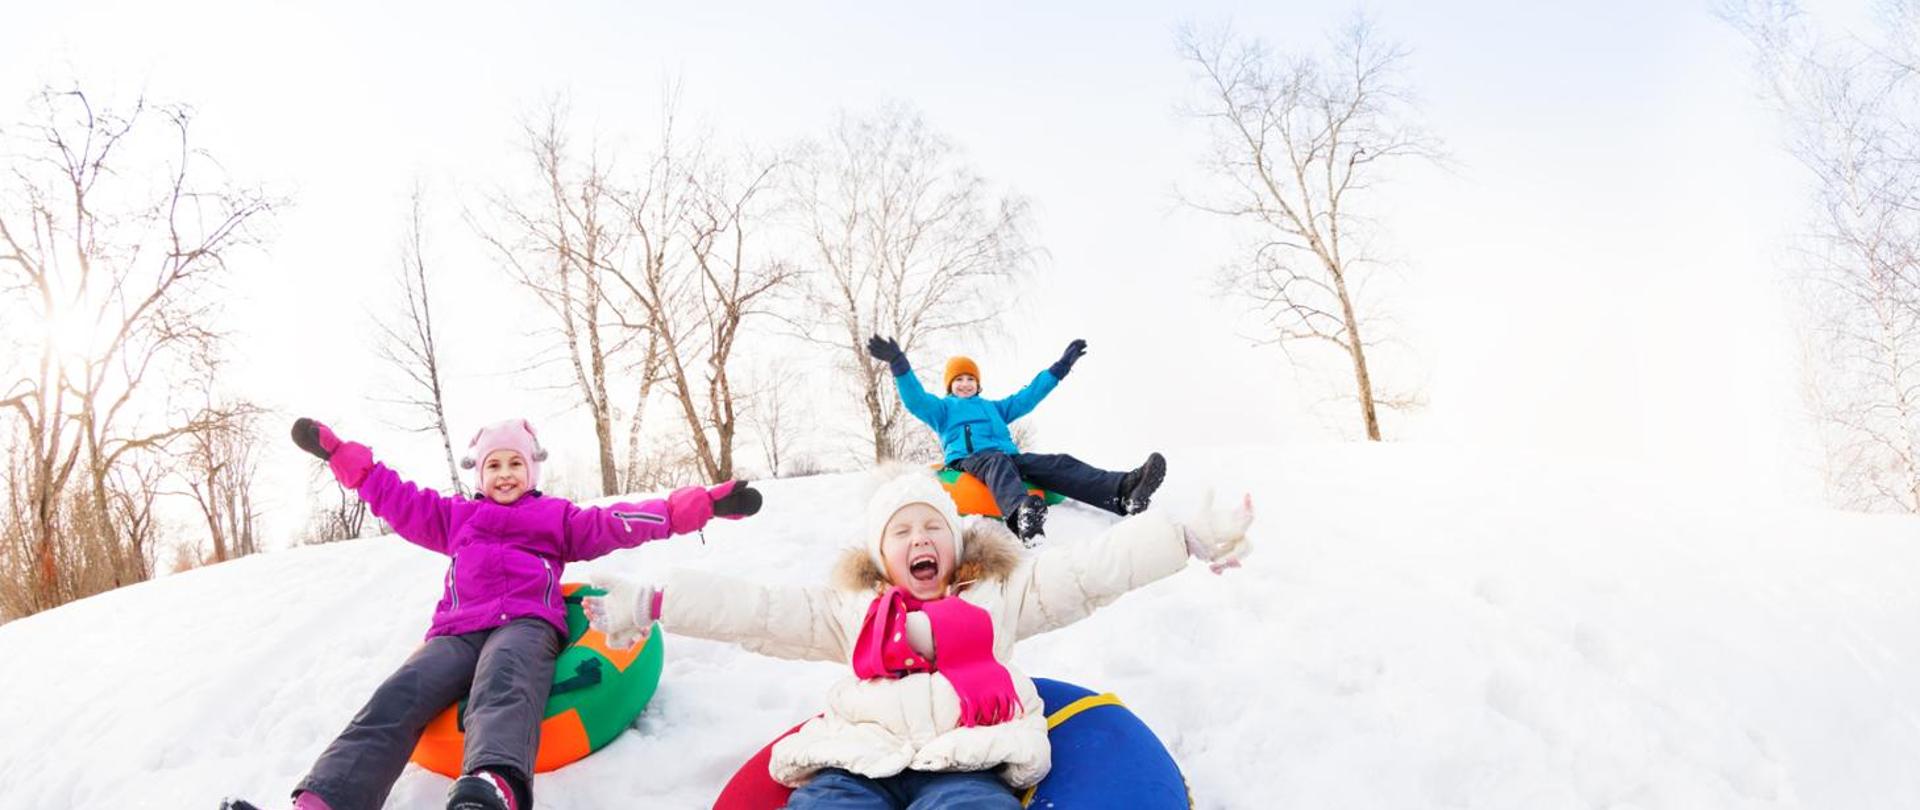 na zdjęciu widnieją dzieci zjeżdżające na sankach po śniegu